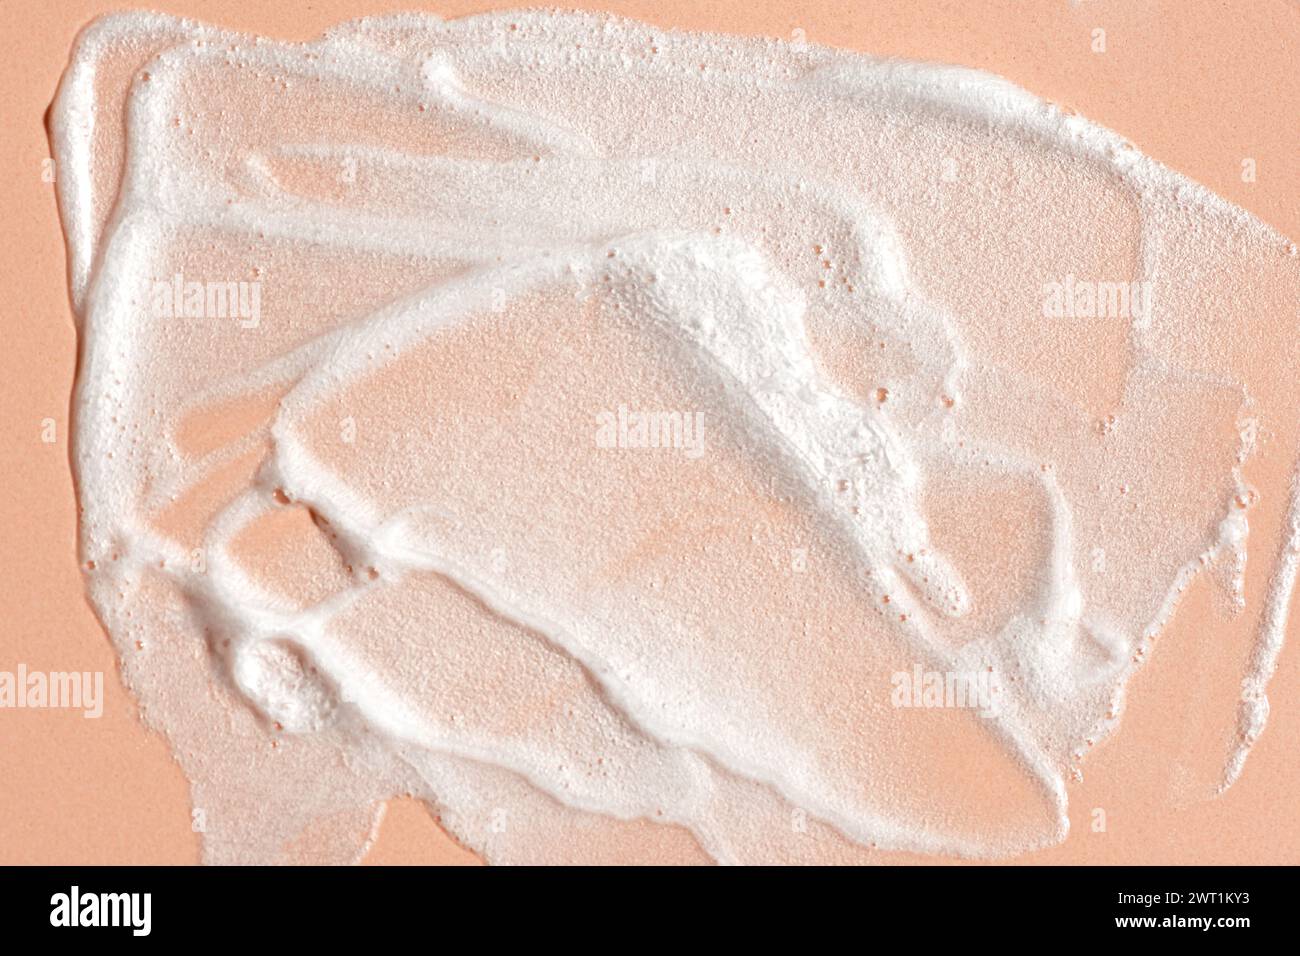 Échantillon de mousse nettoyante pour le visage. Bulles de mousse nettoyante blanche sur fond beige rose. Savon, gel douche, shampooing mousse texture gros plan. Banque D'Images